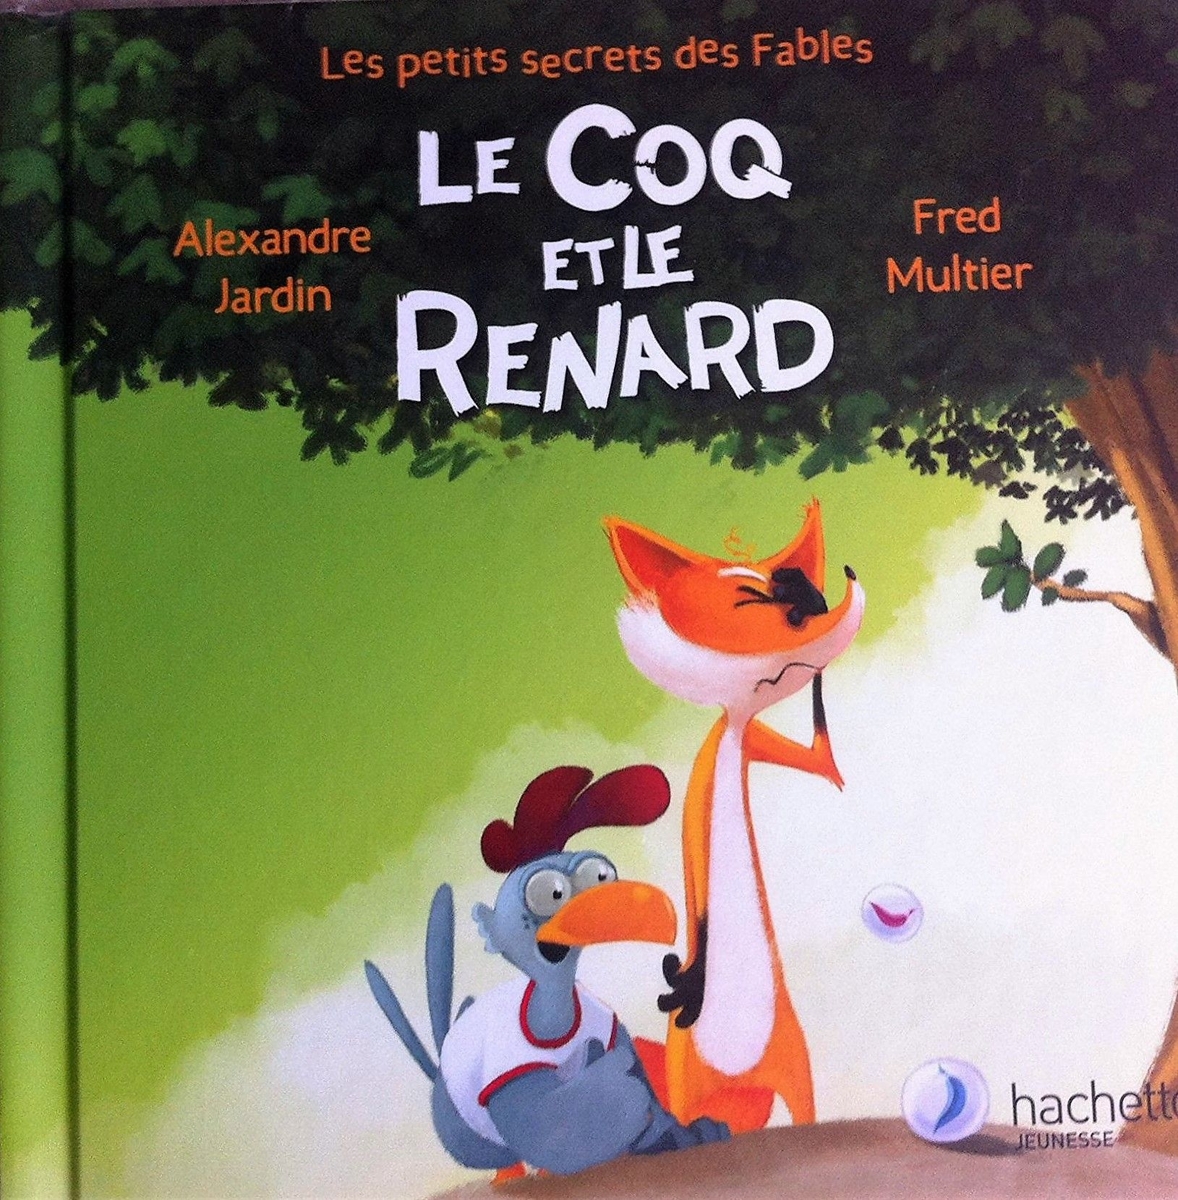 <a href="/node/93776">Le coq et le renard</a>